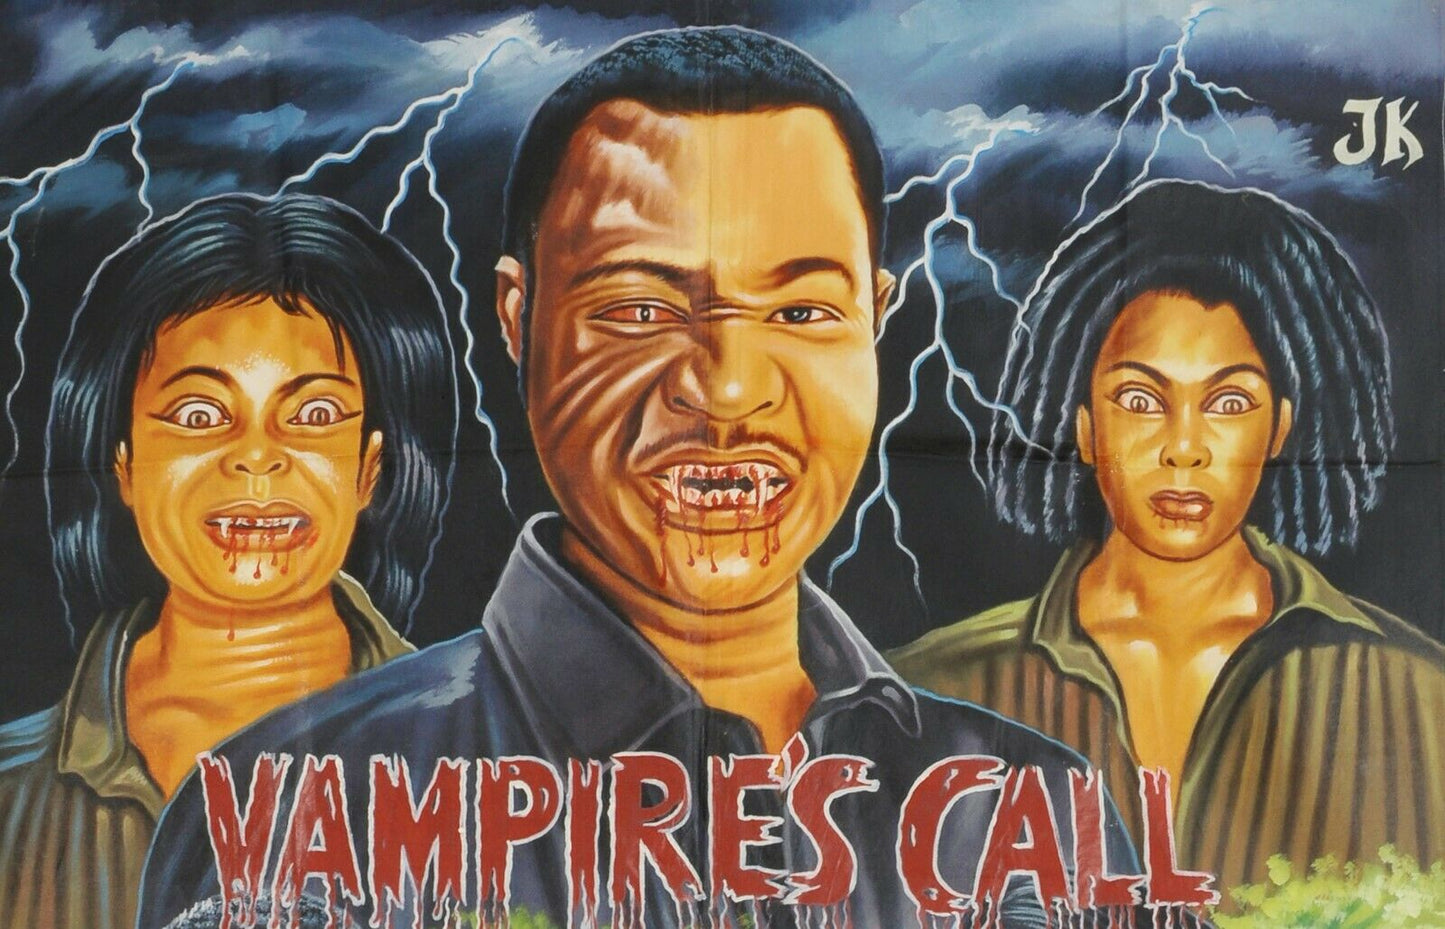 Αφίσα Cinema Movie Ghana Αφρικανικός καμβάς ζωγραφισμένος στο χέρι VAMPIRES CALL - Tribalgh